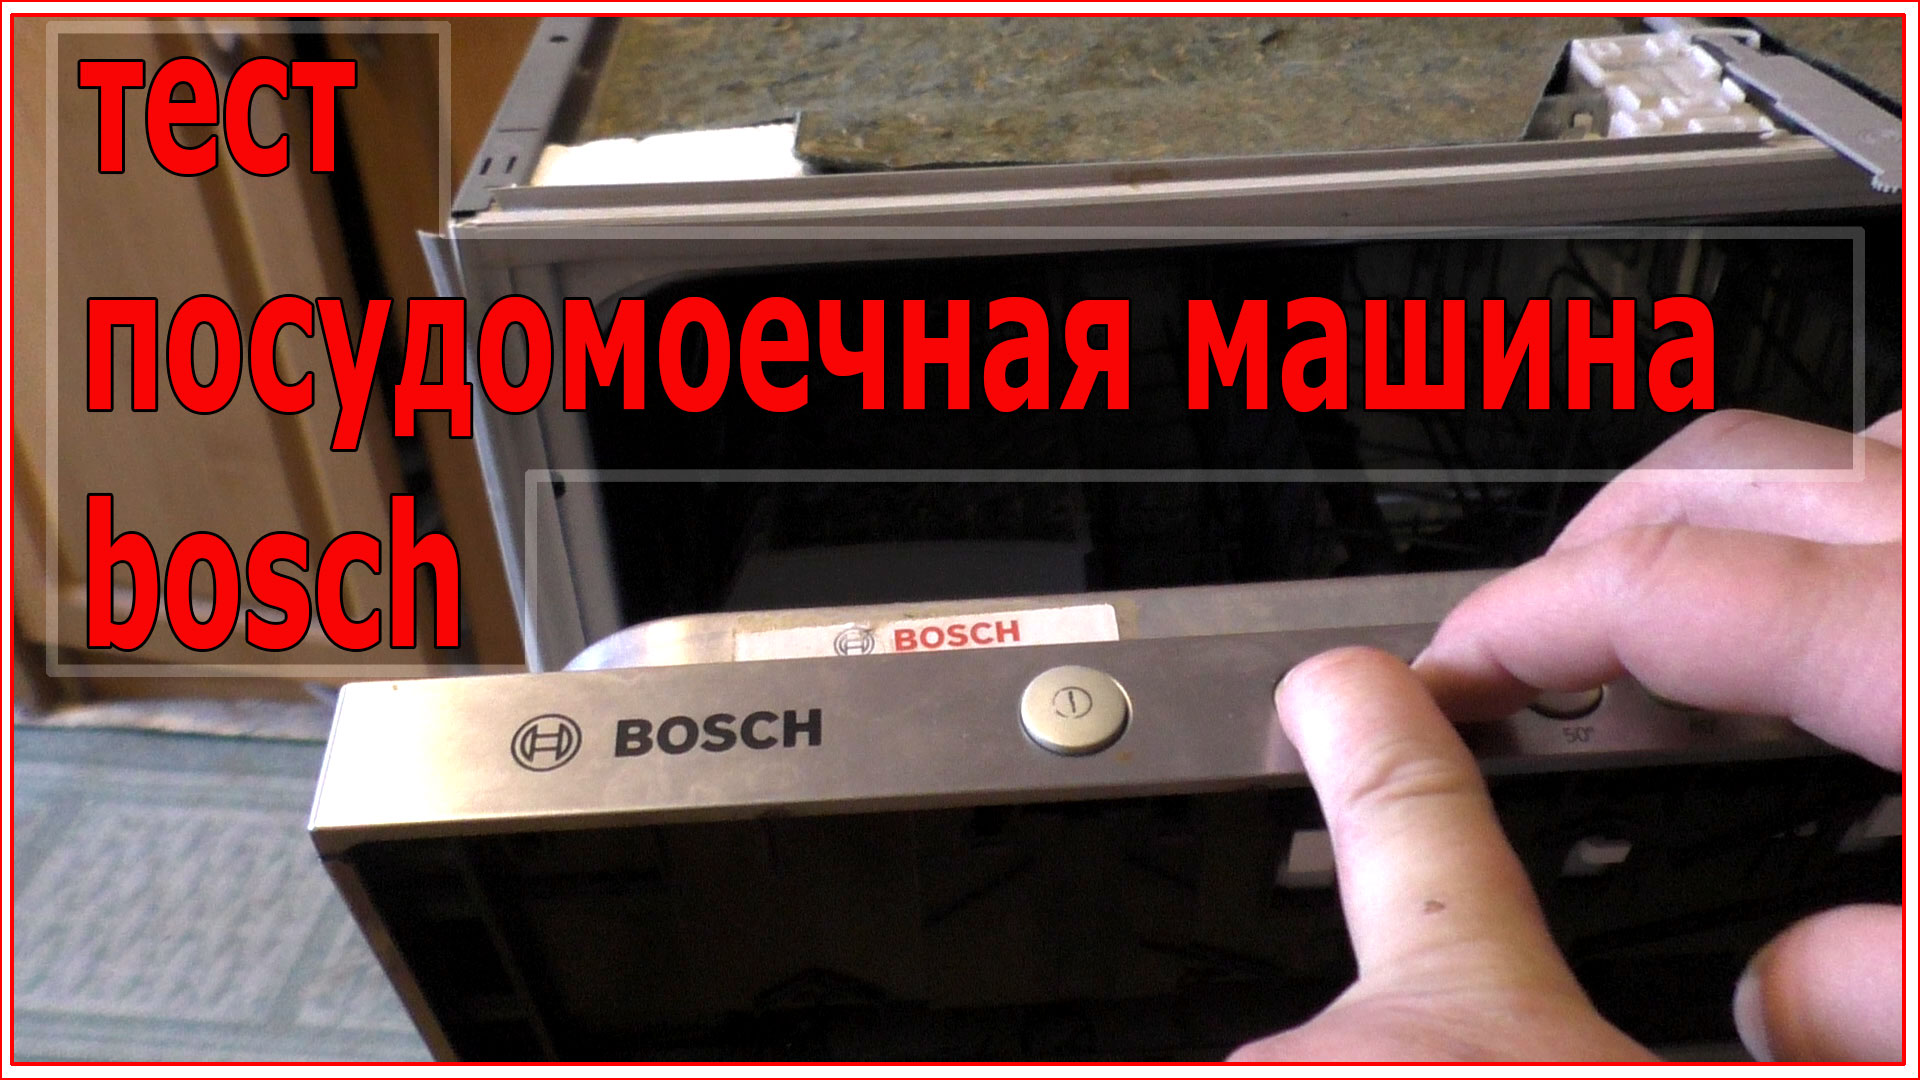 Ошибка посудомоечной машины bosch горит. Посудомойка Bosch тестирование. Ошибки посудомойки Bosch. Сервисный режим посудомоечной машины Bosch. Посудомоечная машина Bosch сброс ошибок.